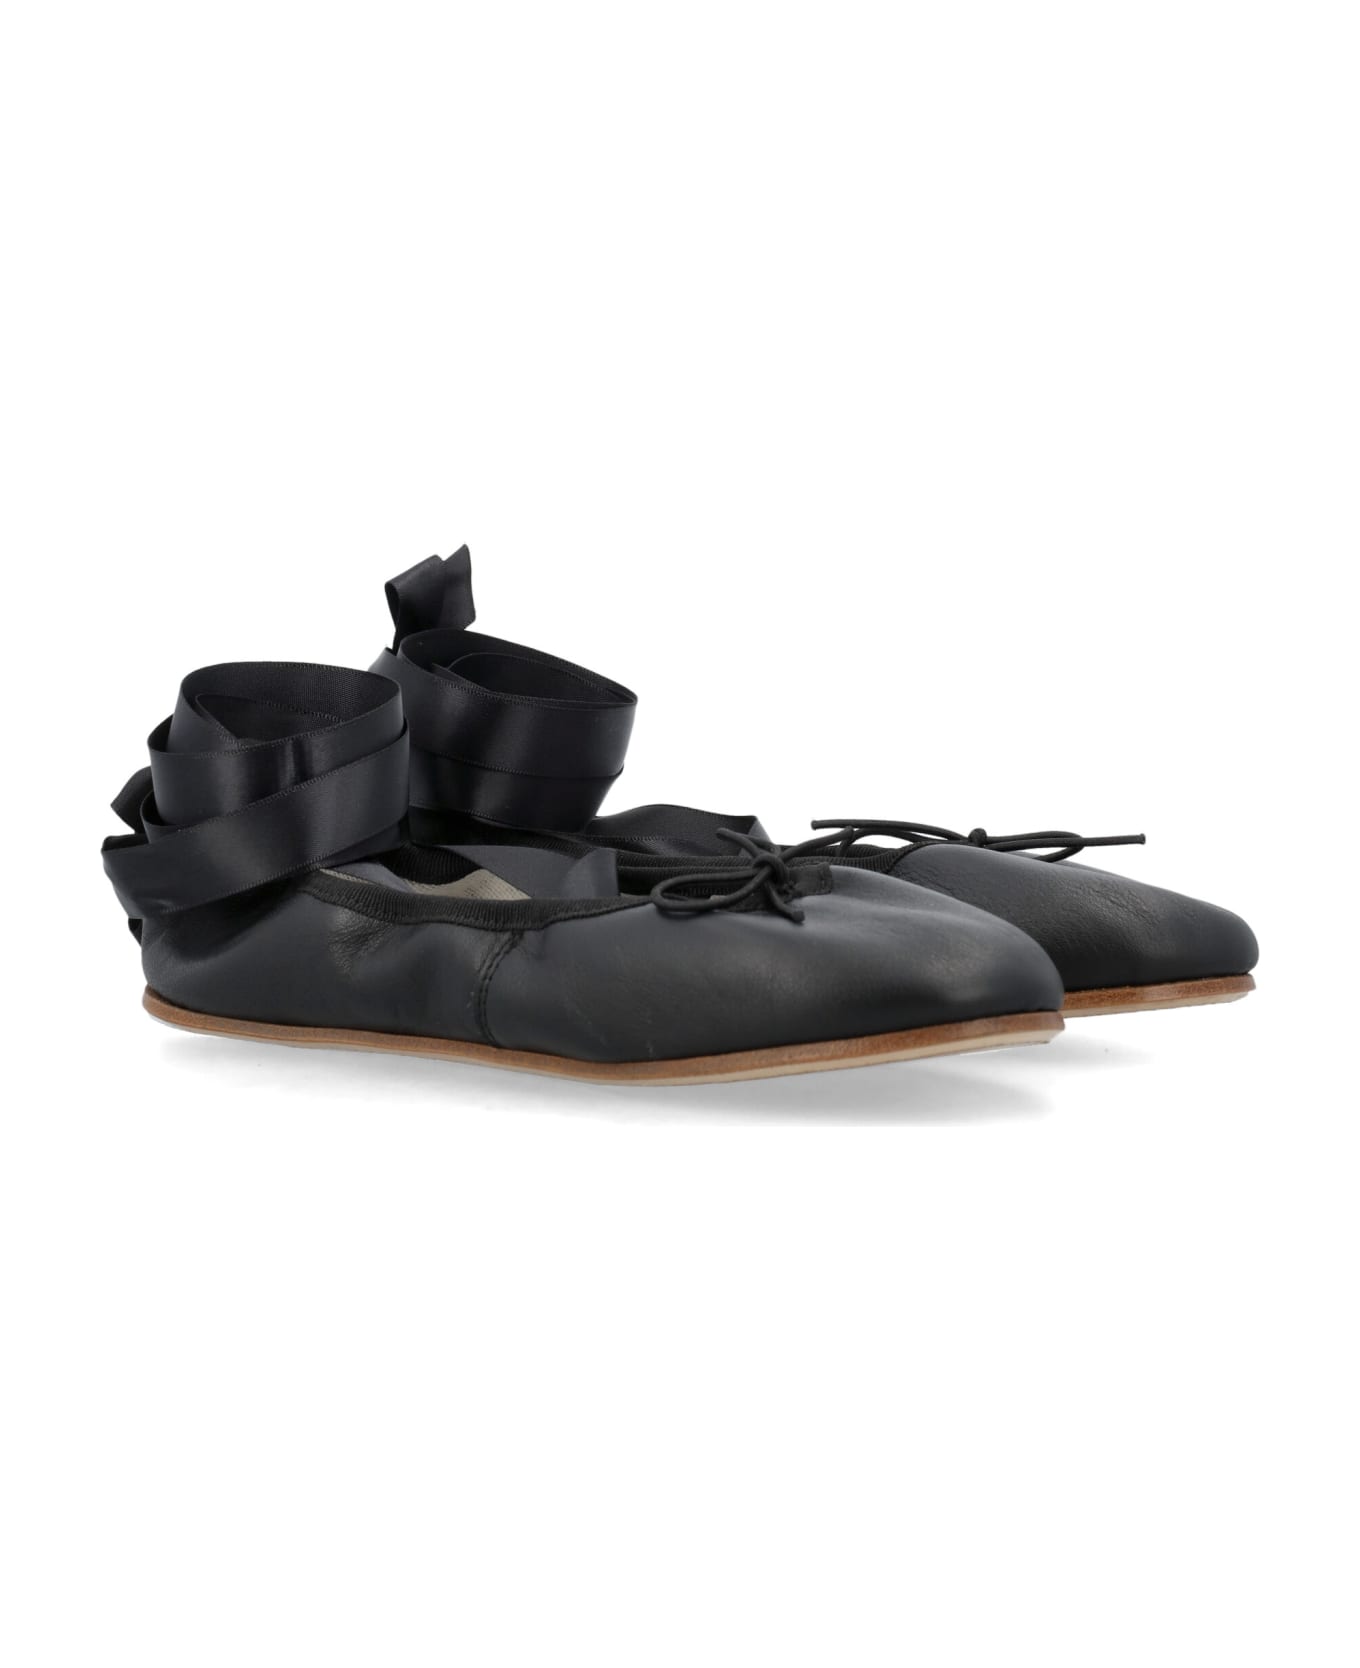 Repetto Sophia Ballerina Shoes - Black